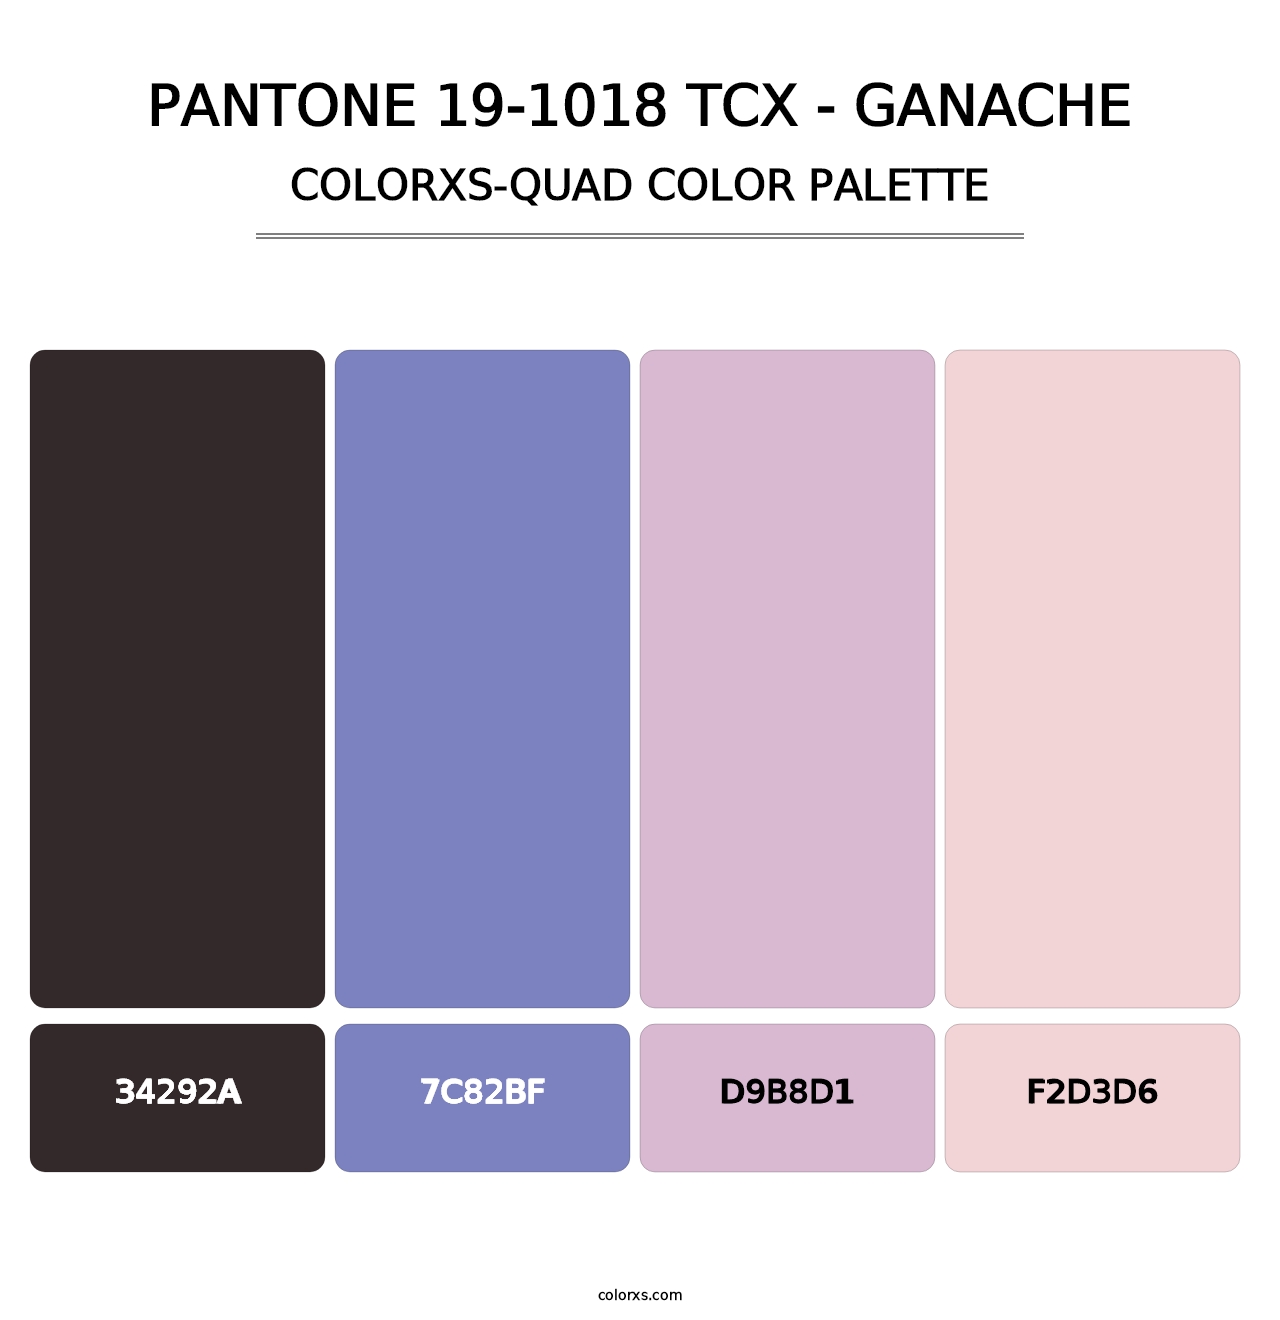 PANTONE 19-1018 TCX - Ganache - Colorxs Quad Palette